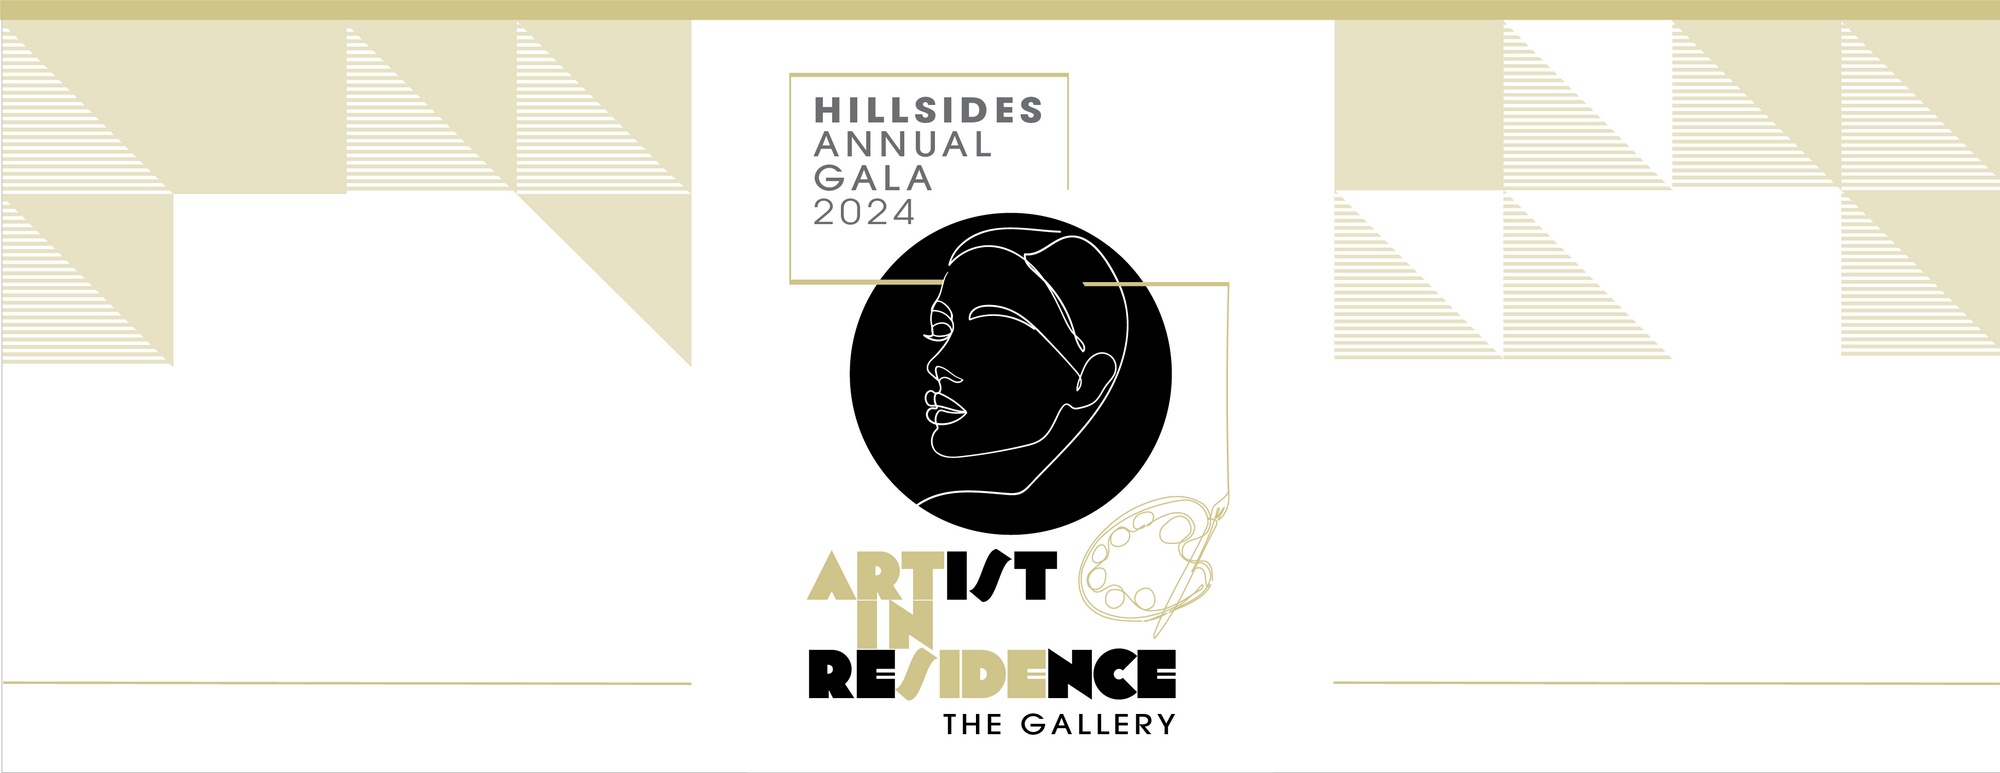 Artist in Residence, Hillsides 2024 Gala Annual